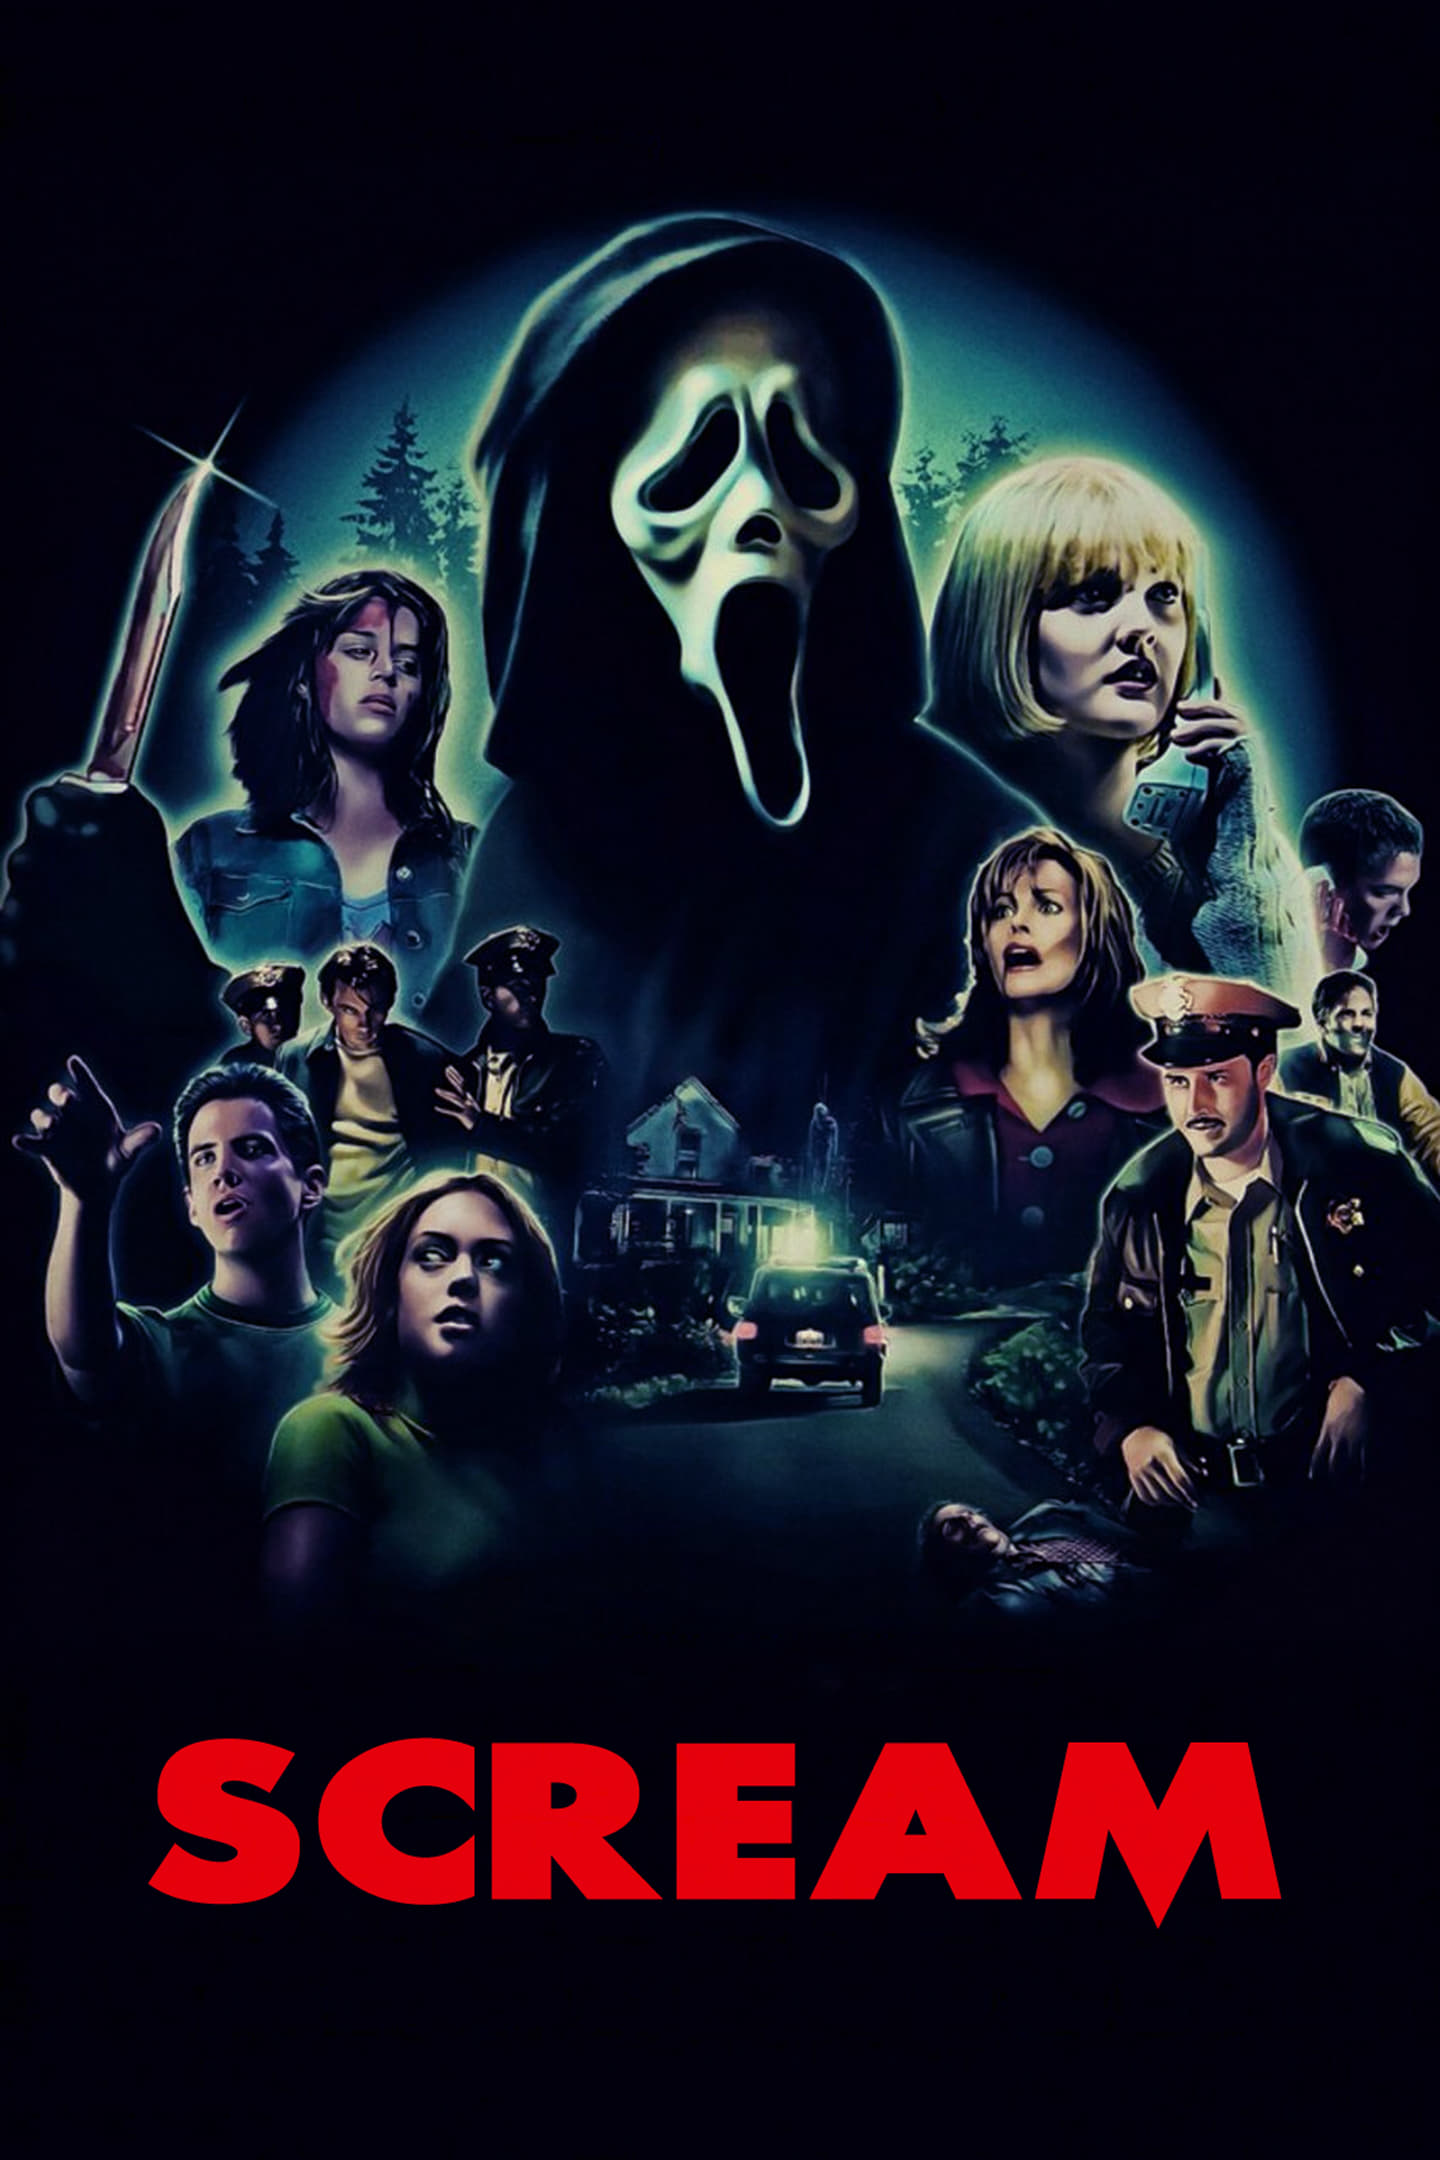 Final Girls Ep 191: ‘Scream’ and ‘Scream 2’ - Modern Horrors